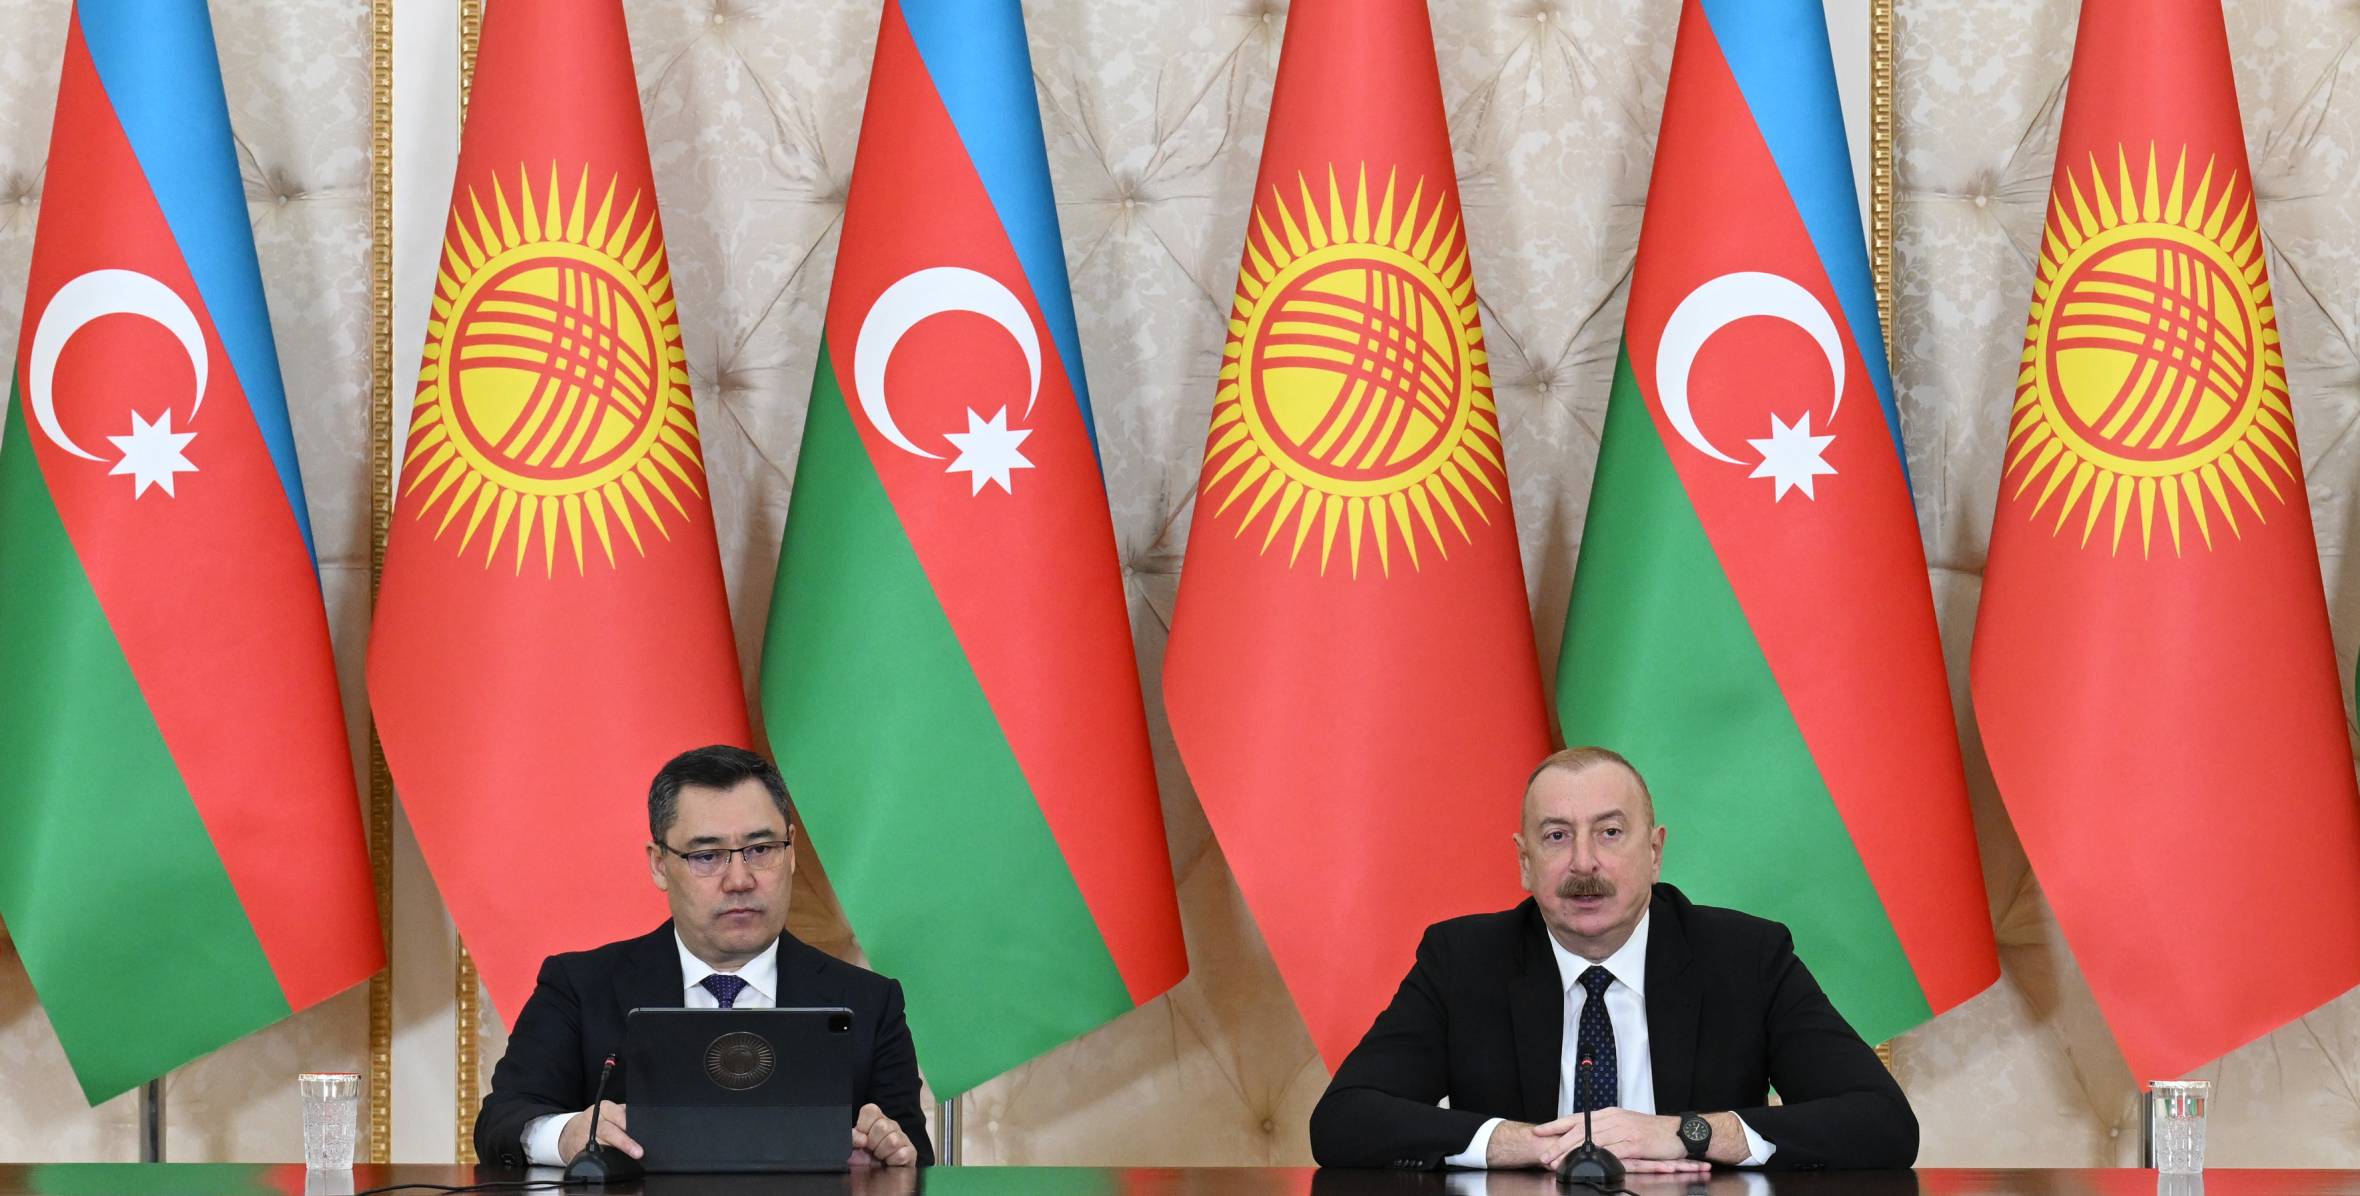 Ilham Aliyev and President Sadyr Zhaparov made press statements